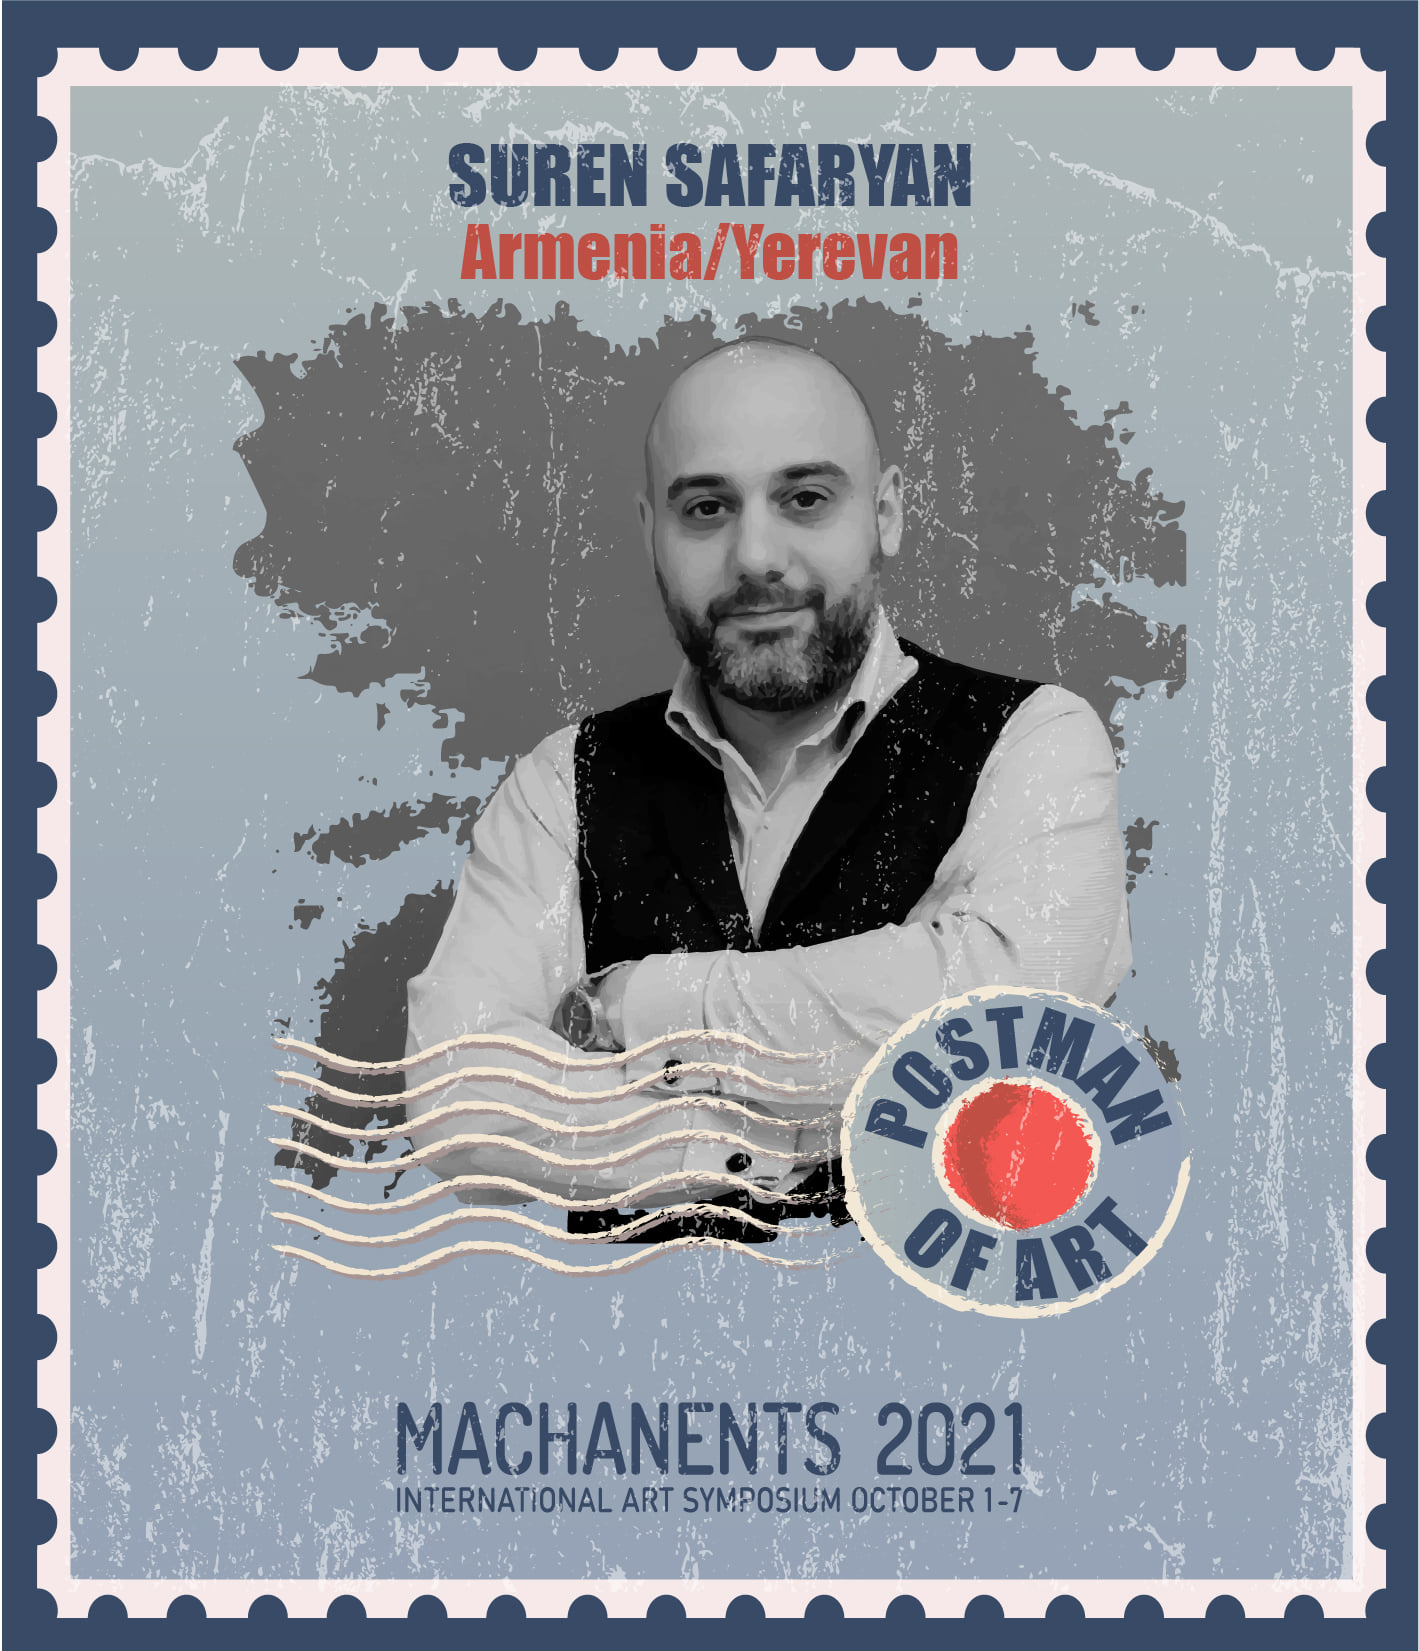 Suren Safaryan